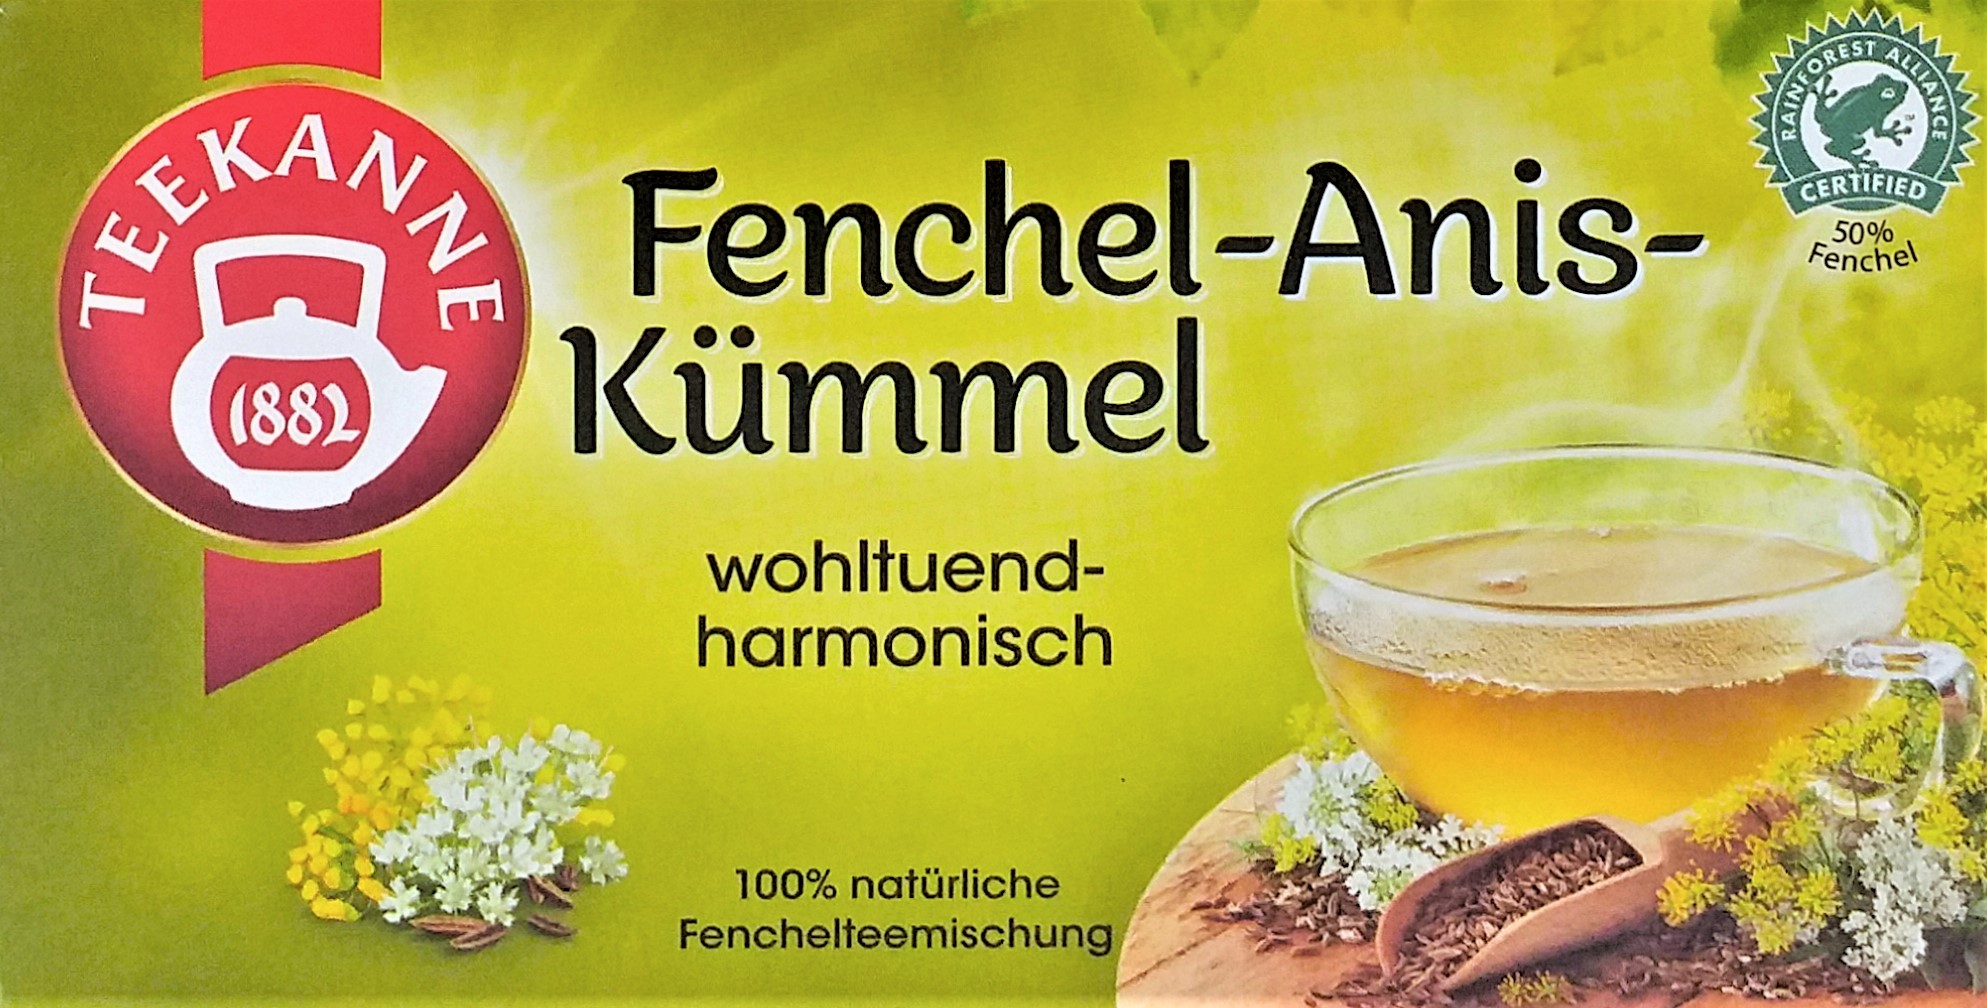 Teekanne Fenchel Anis-Kümmel 60g, 20 Beutel